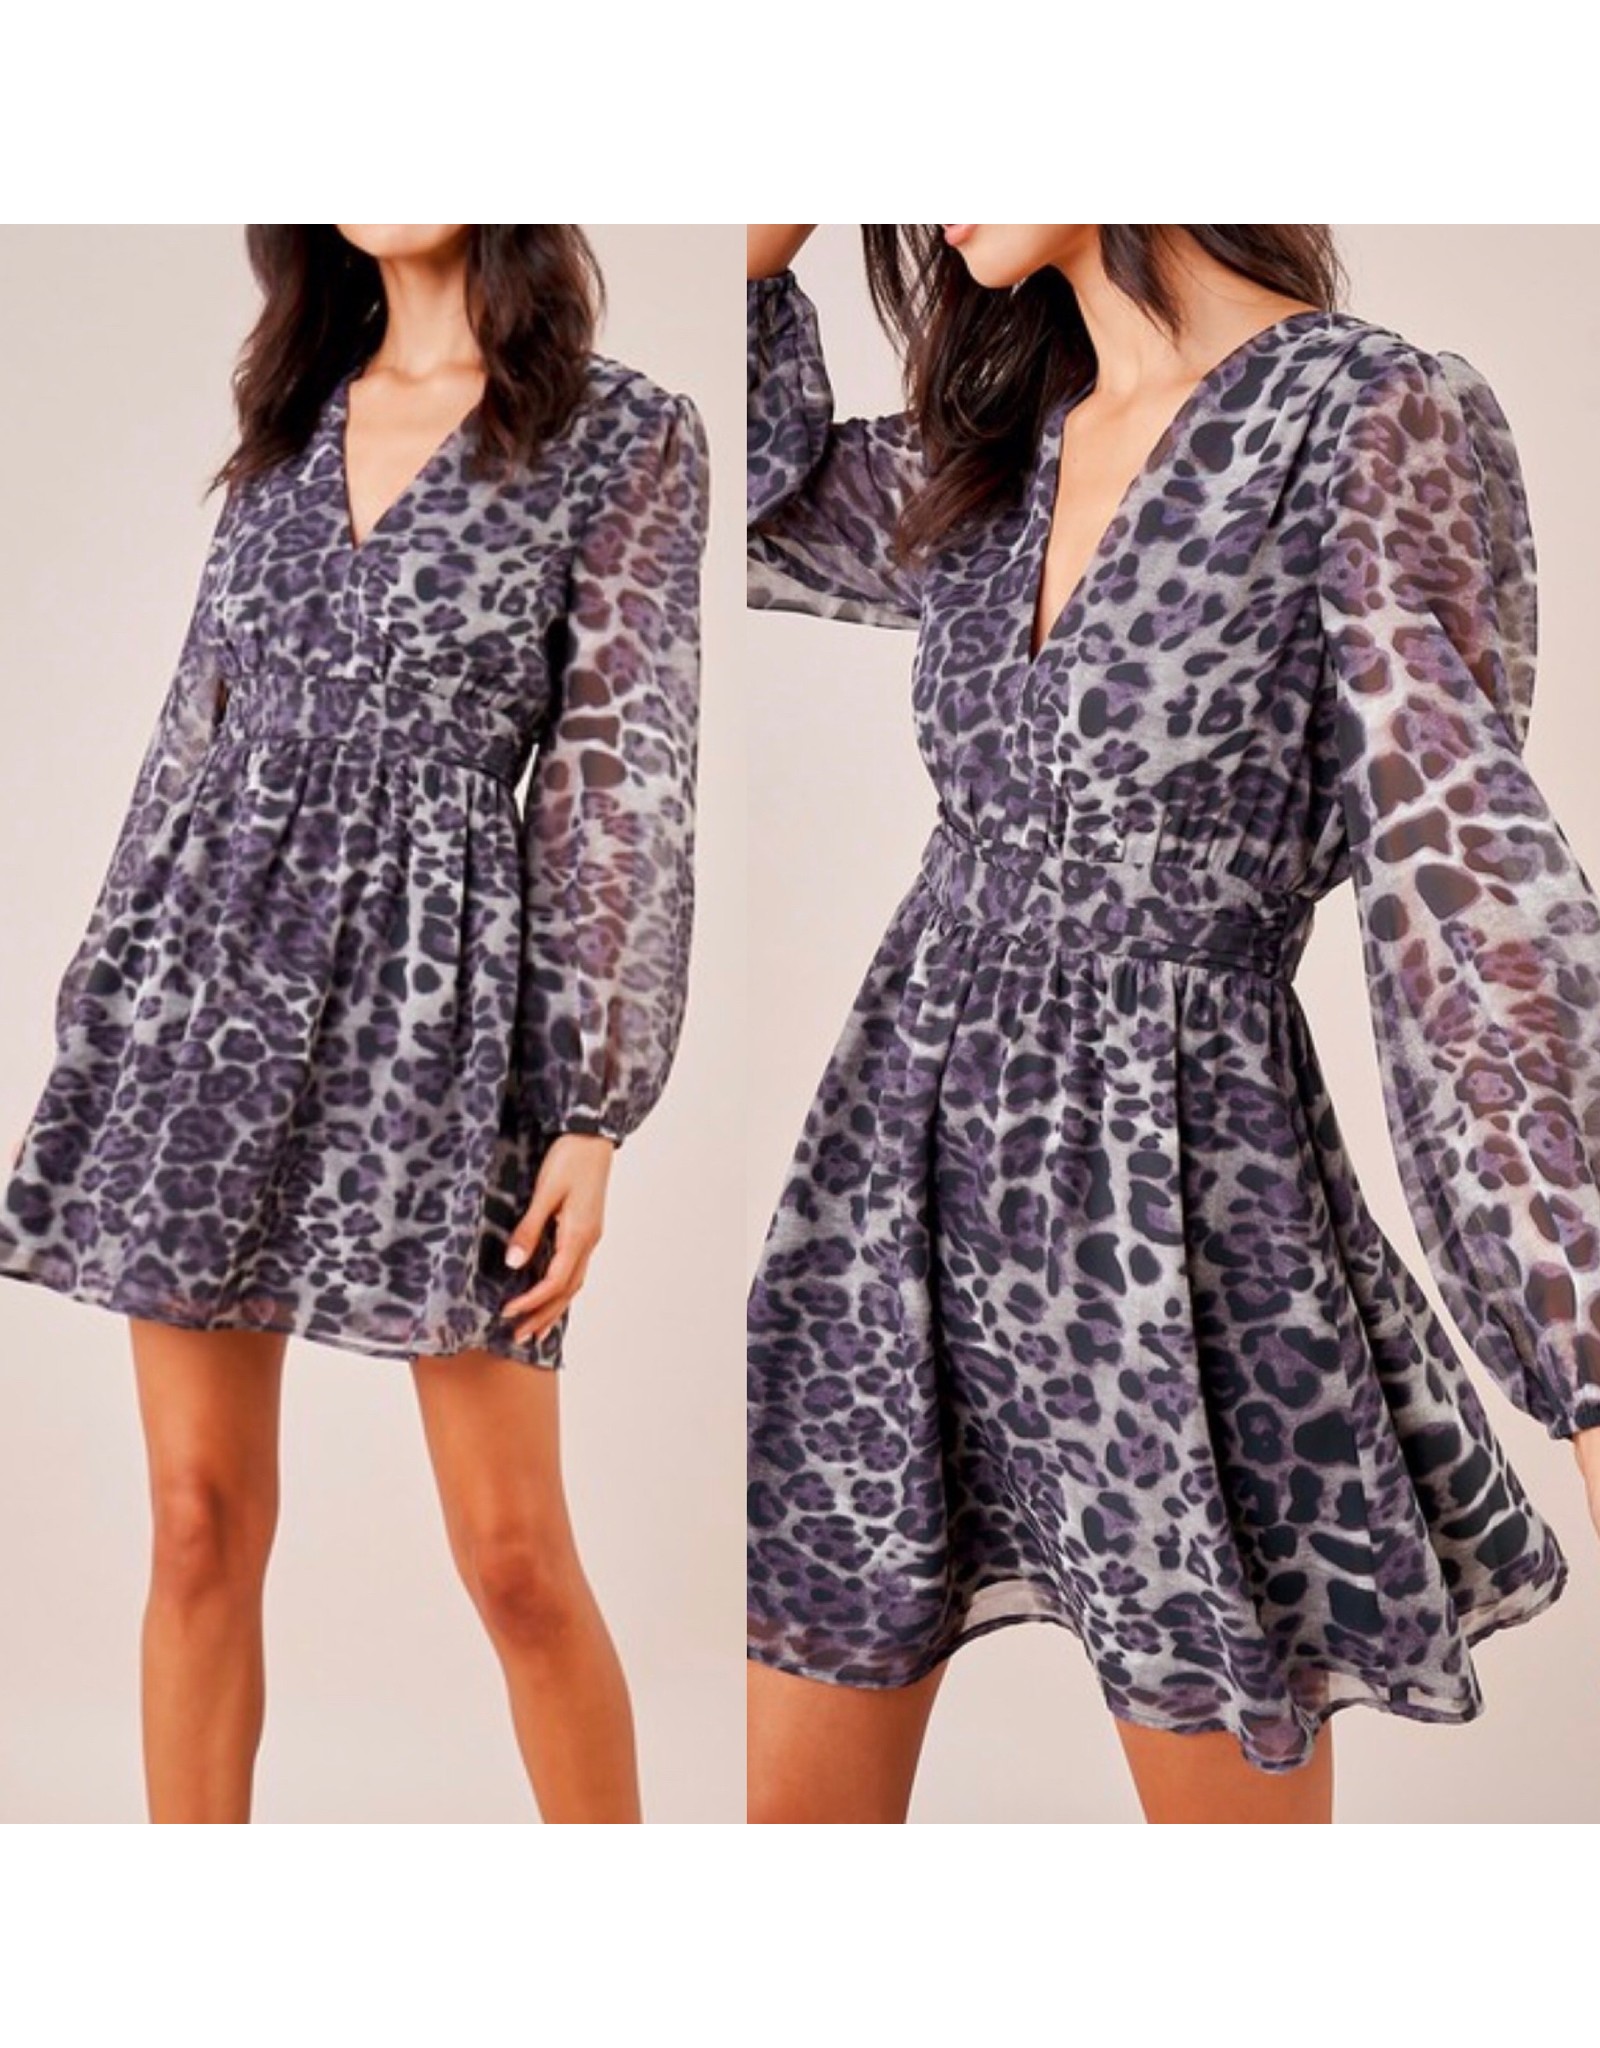 Sugarlips Leopard Mini Dress - NAVY